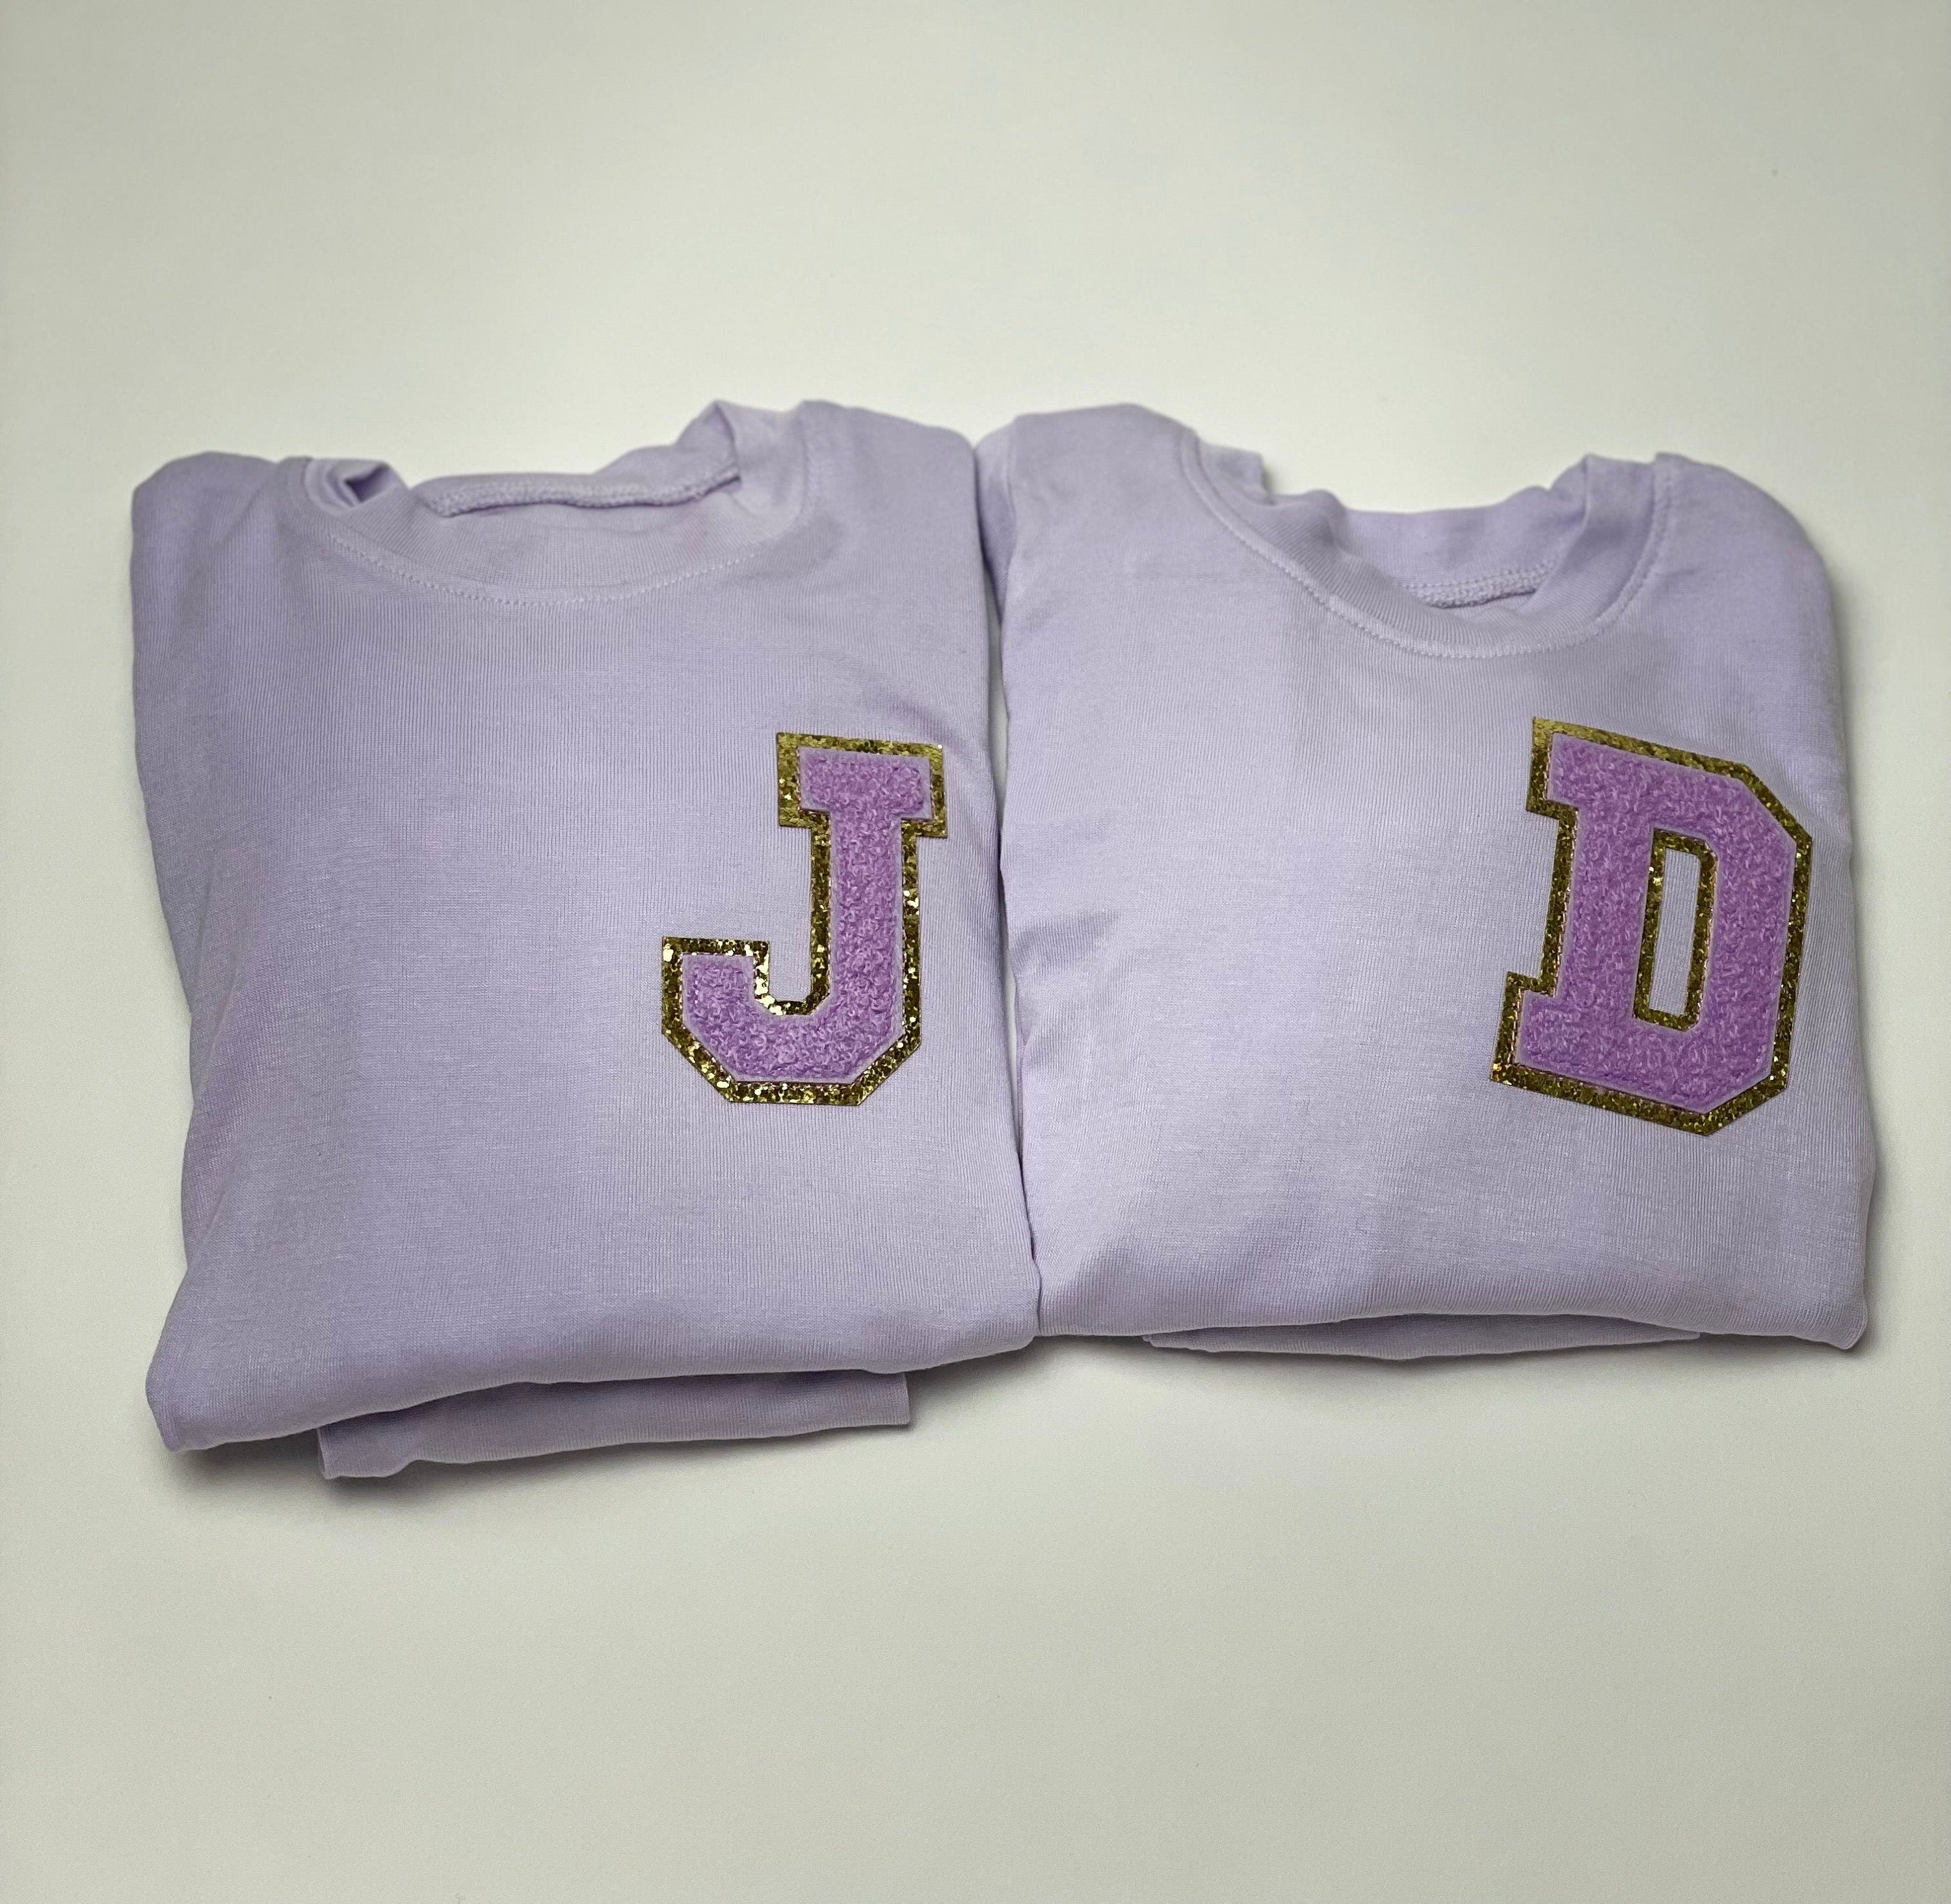 Kids Personalized Pajamas for Girls| Toddler Pajamas| Youth Pajamas| Birthday Gift| Slumber Party| | Initial| Christmas Gift| Purple